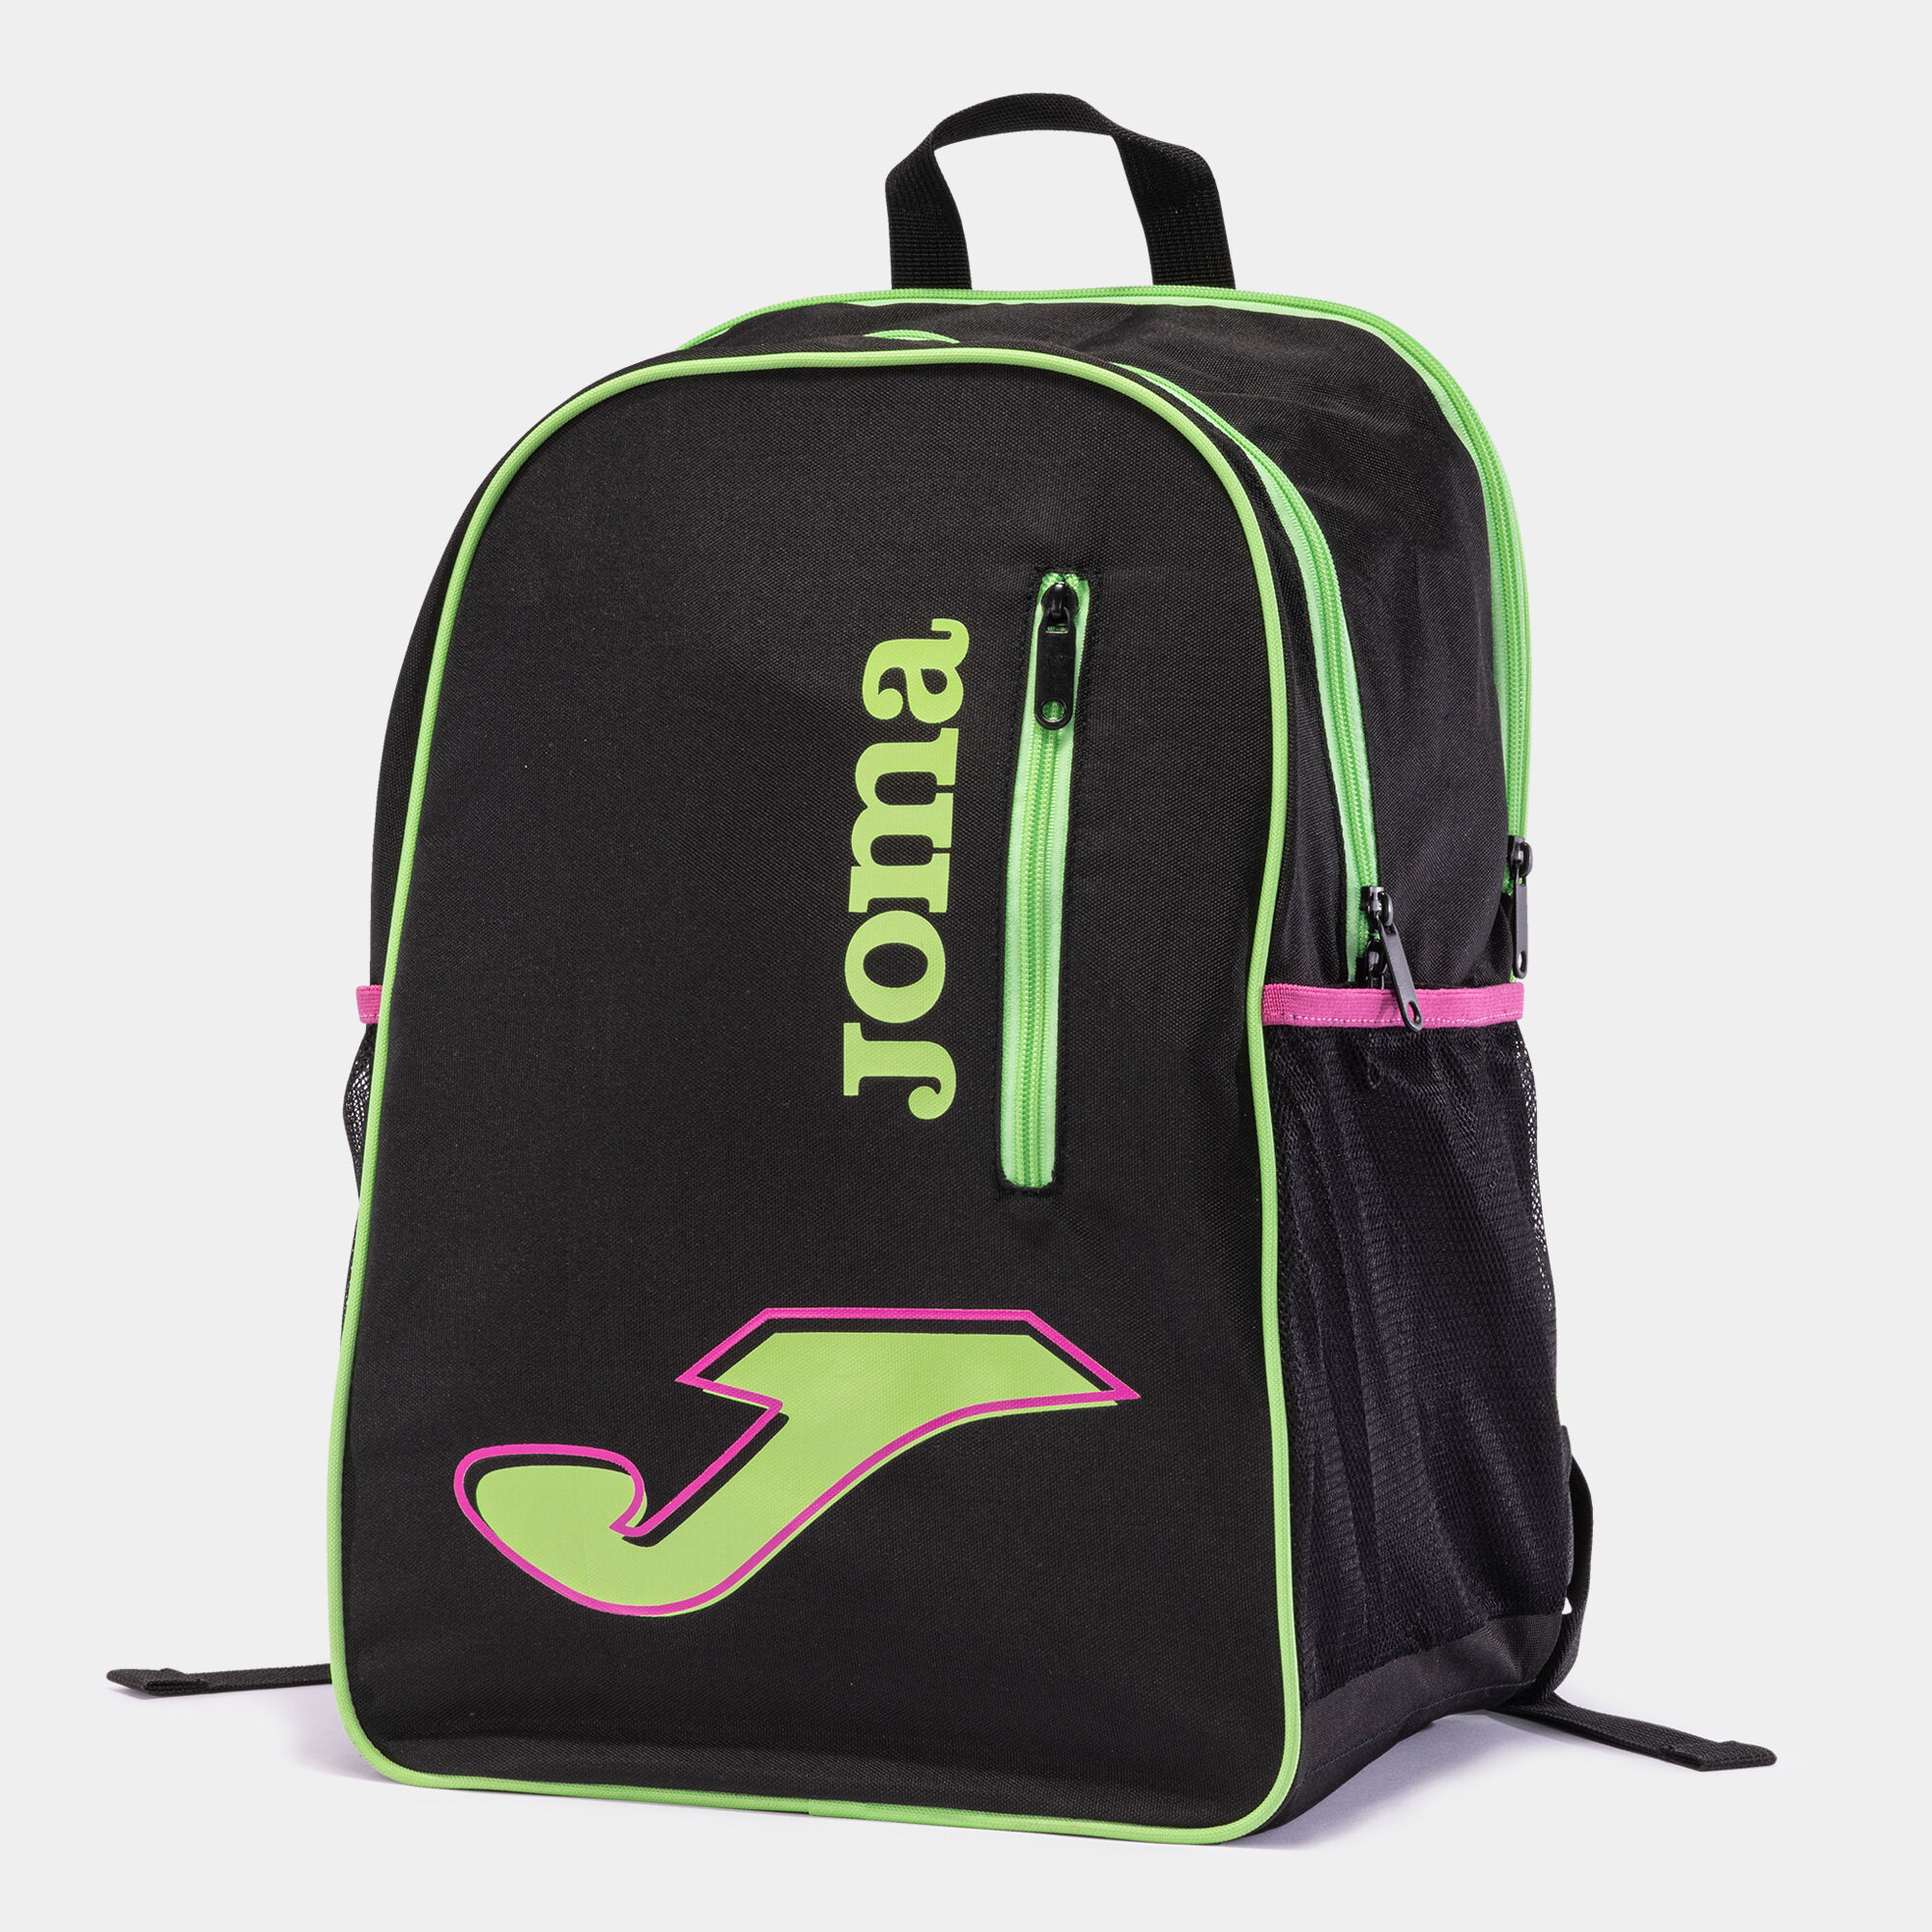 Backpack - shoe bag Master black green